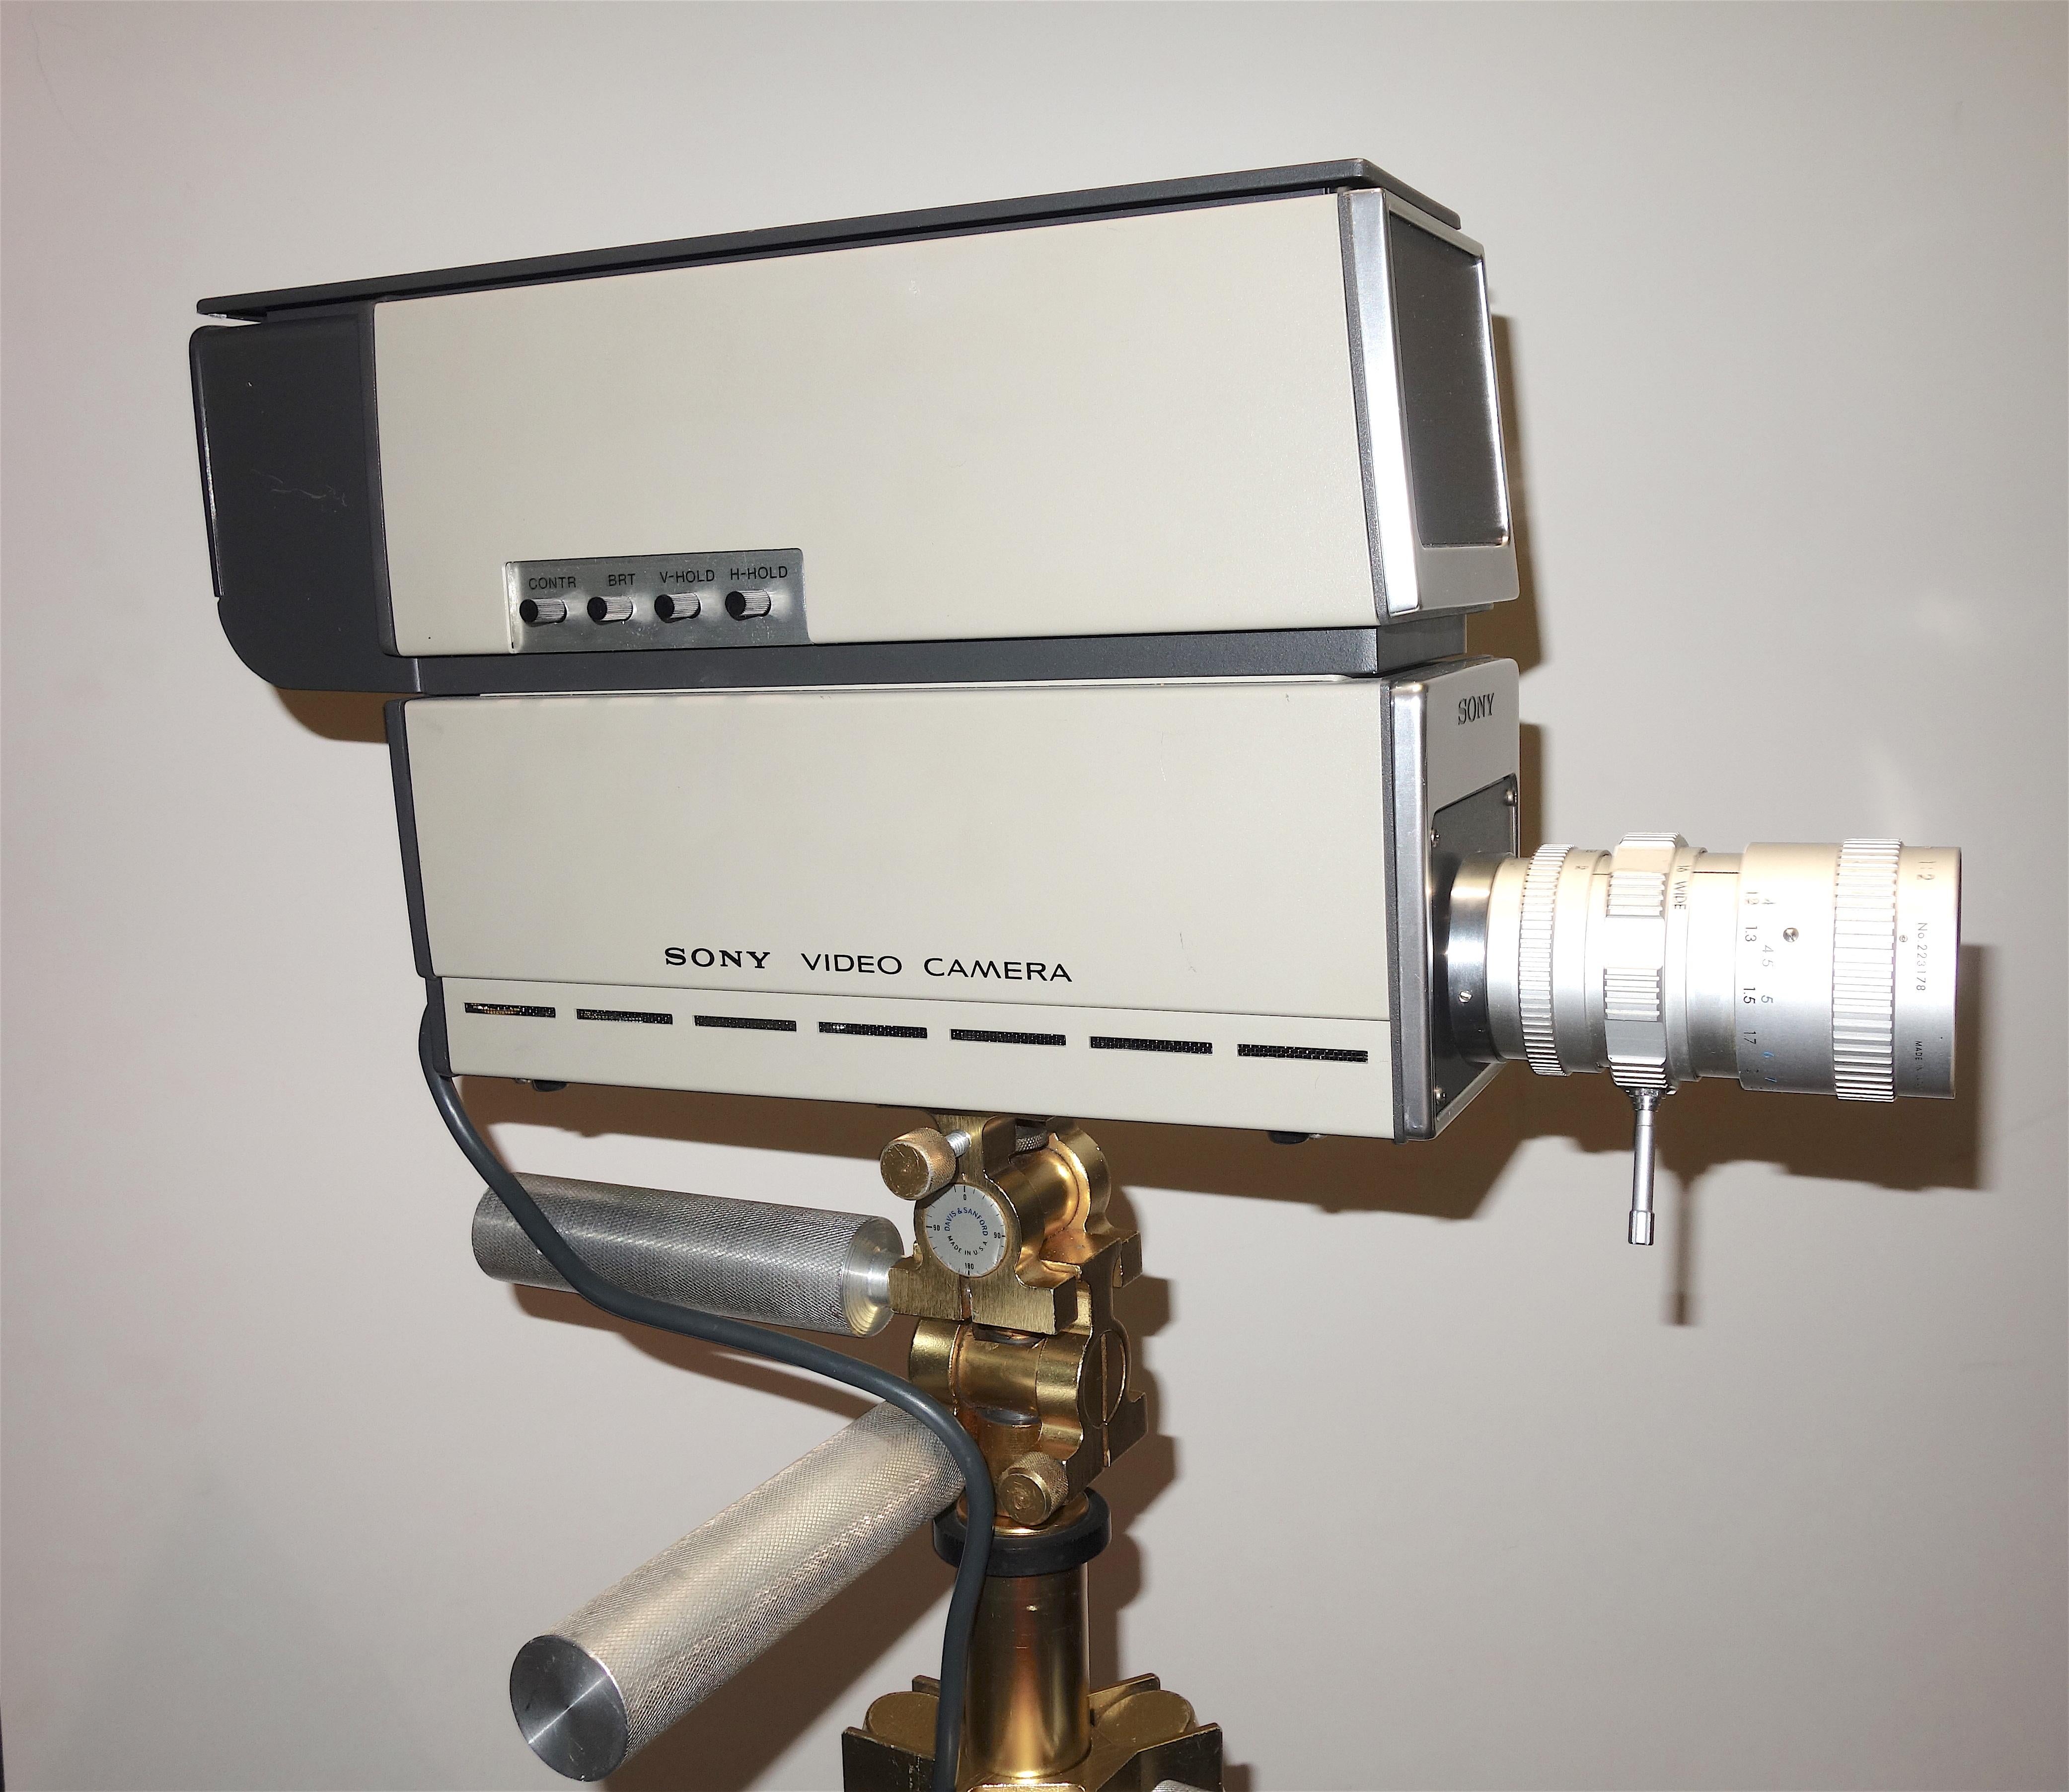 Nous soumettons à votre considération cette caméra de télévision industrielle Sony Vidicon d'époque, circa 1969, équipée d'un viseur de studio et d'un objectif zoom Sony TV. Vendu uniquement à titre d'exemple et non pour la production.

Un exemple